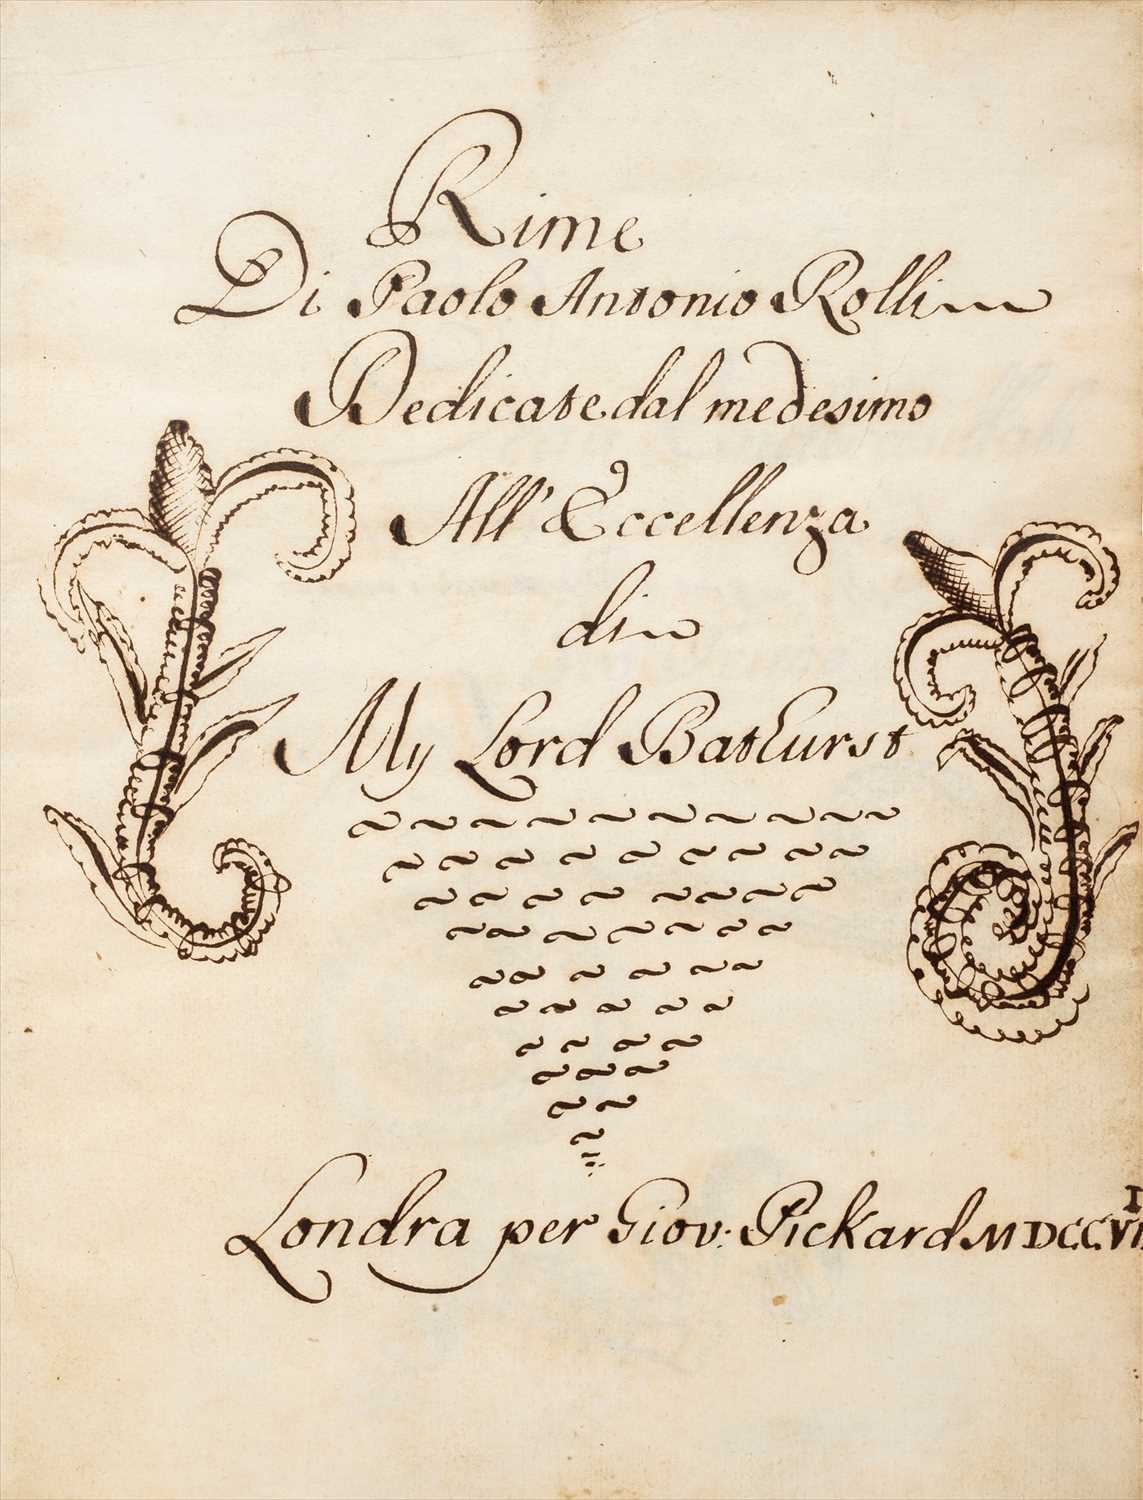 Lot 284 - Rolli (Paolo Antonio, 1687-1765). 'Rime, dedicate all'eccellenza My Lord Bathurst, MDCCVII'